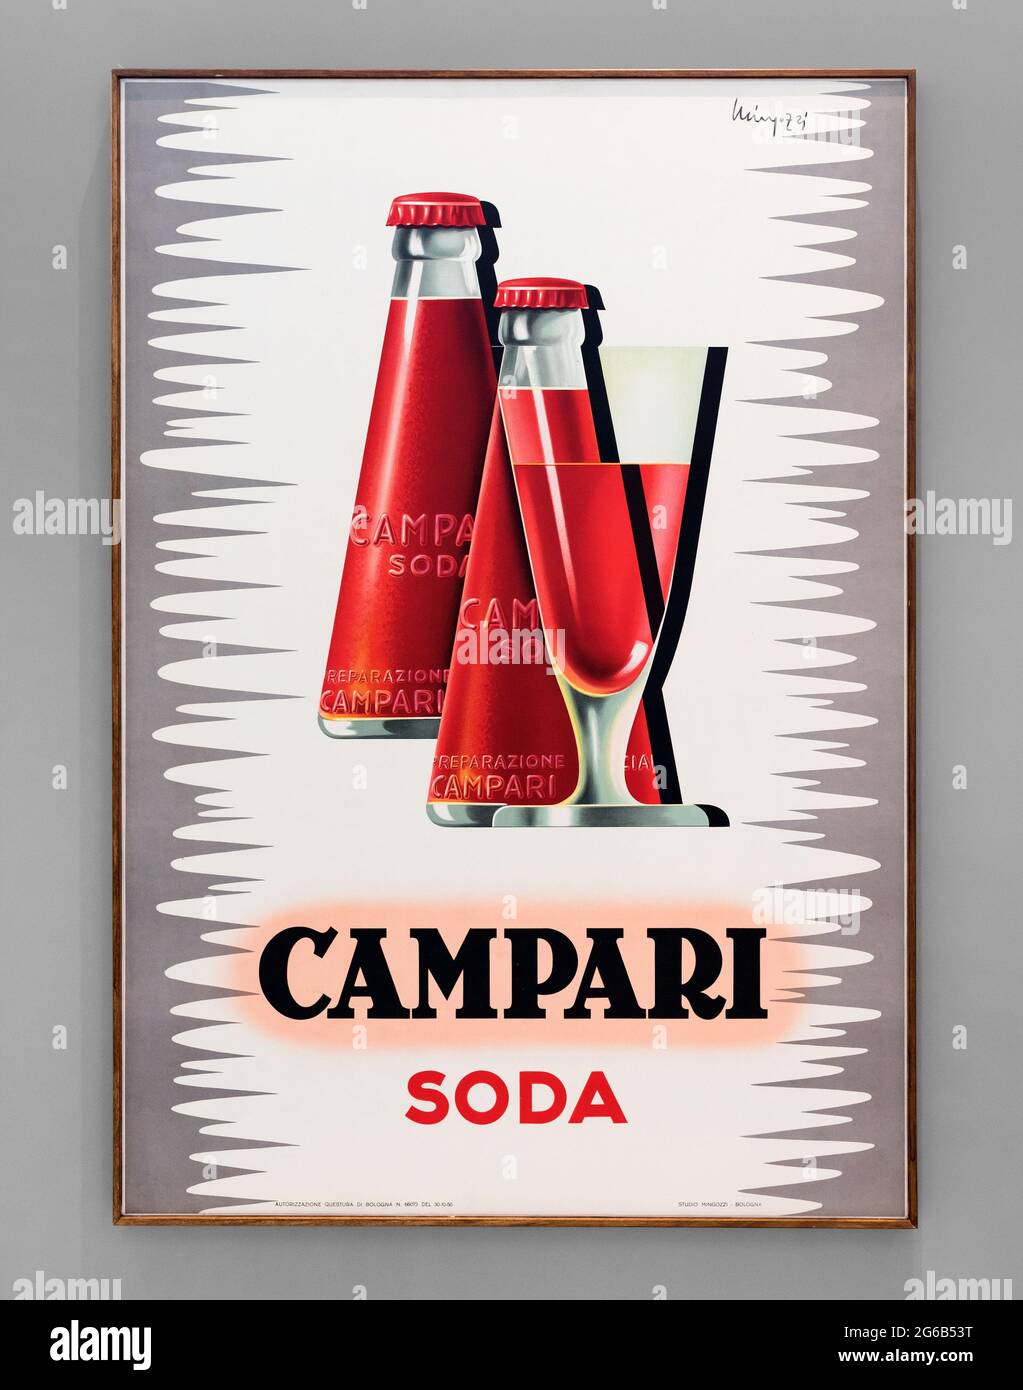 Poster vintage incorniciato che pubblicizzano cocktail Campari Soda italiani con bottiglie di bevanda rossa e un elegante vetro conico appeso su una parete grigia Foto Stock